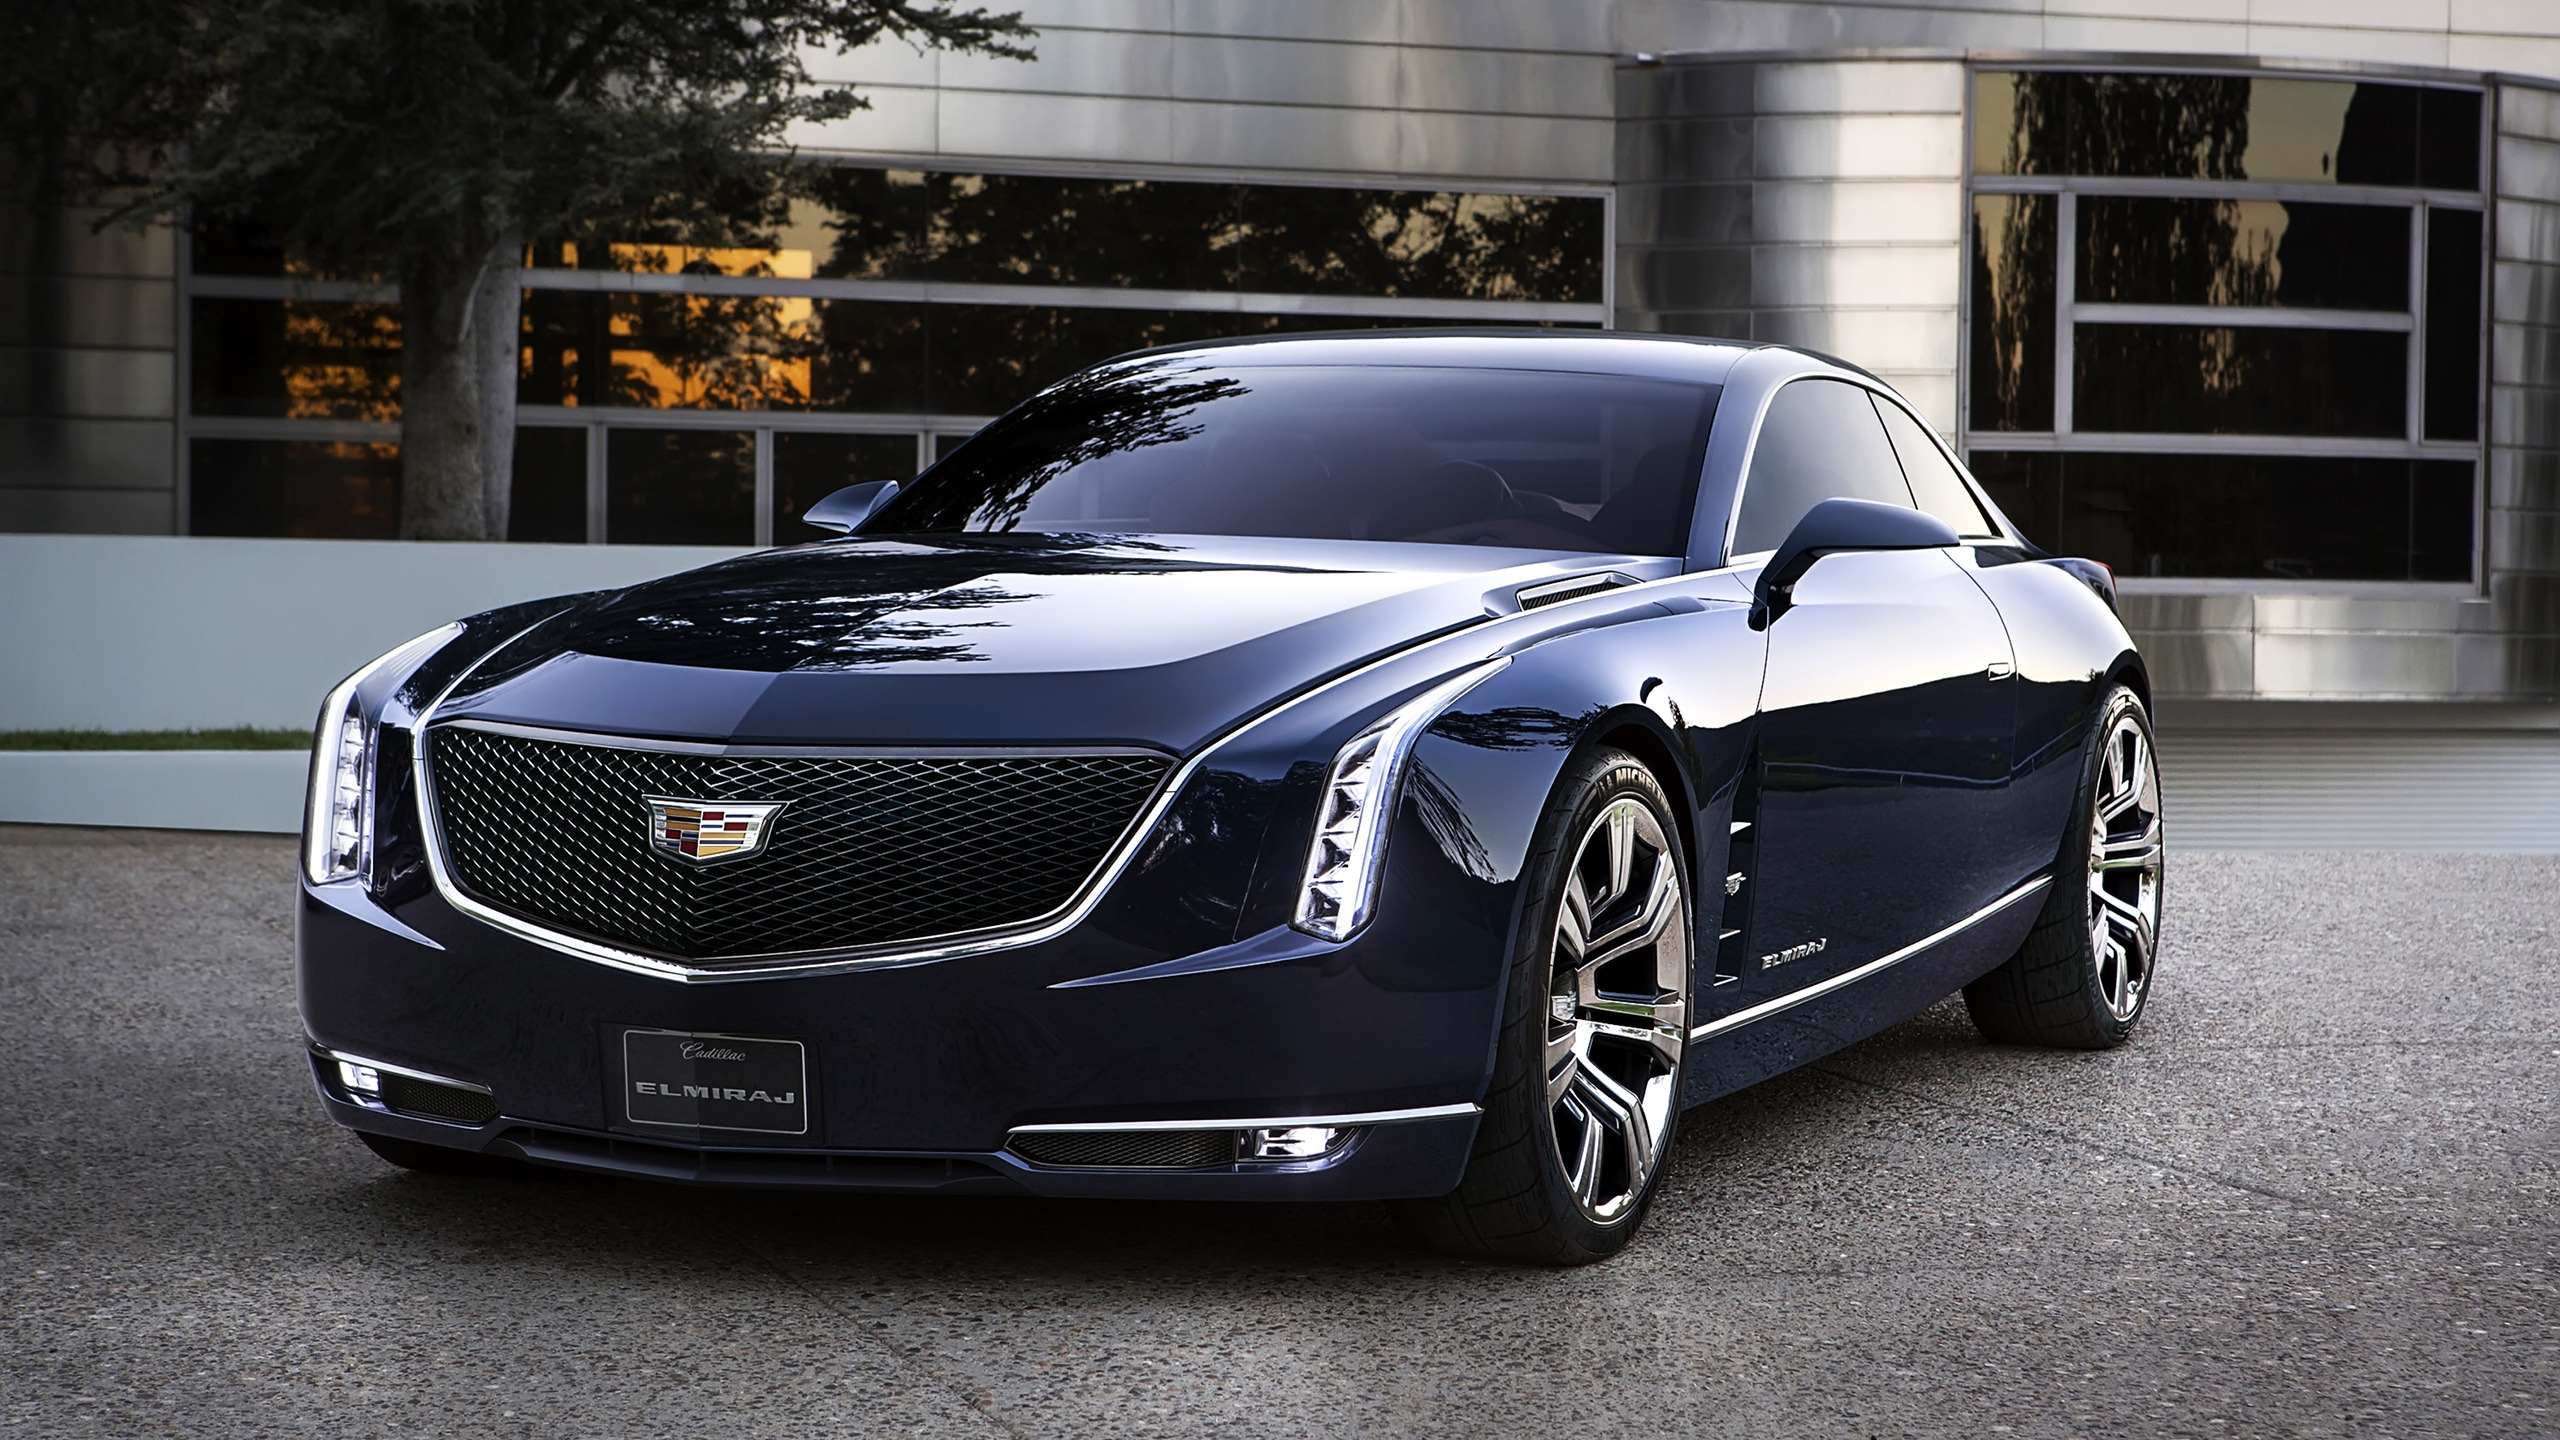 2013 Cadillac Elmiraj Concept for 2560x1440 HDTV resolution